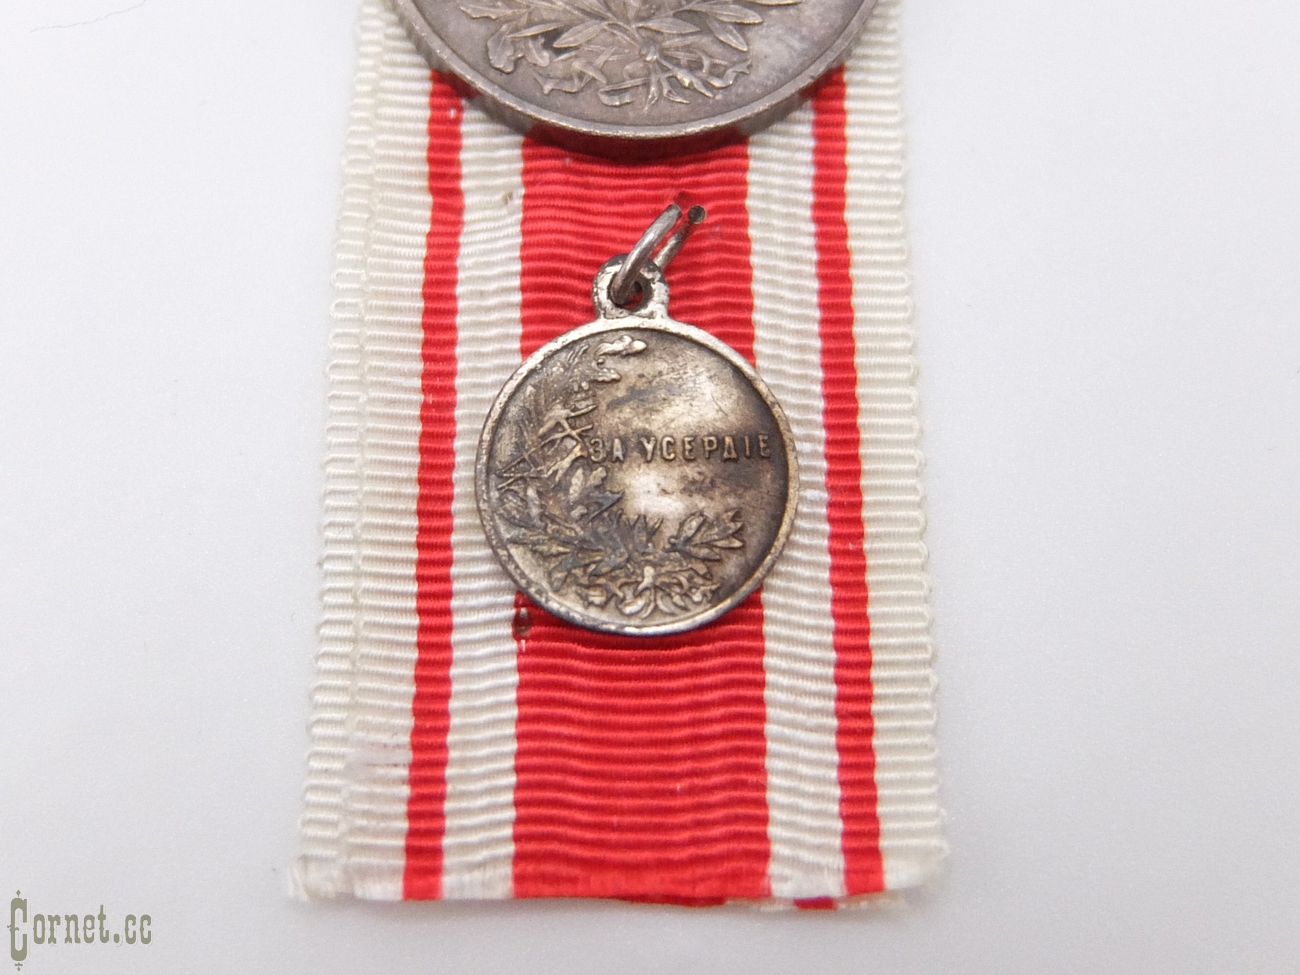 Медаль и миниатюра "За усердие"